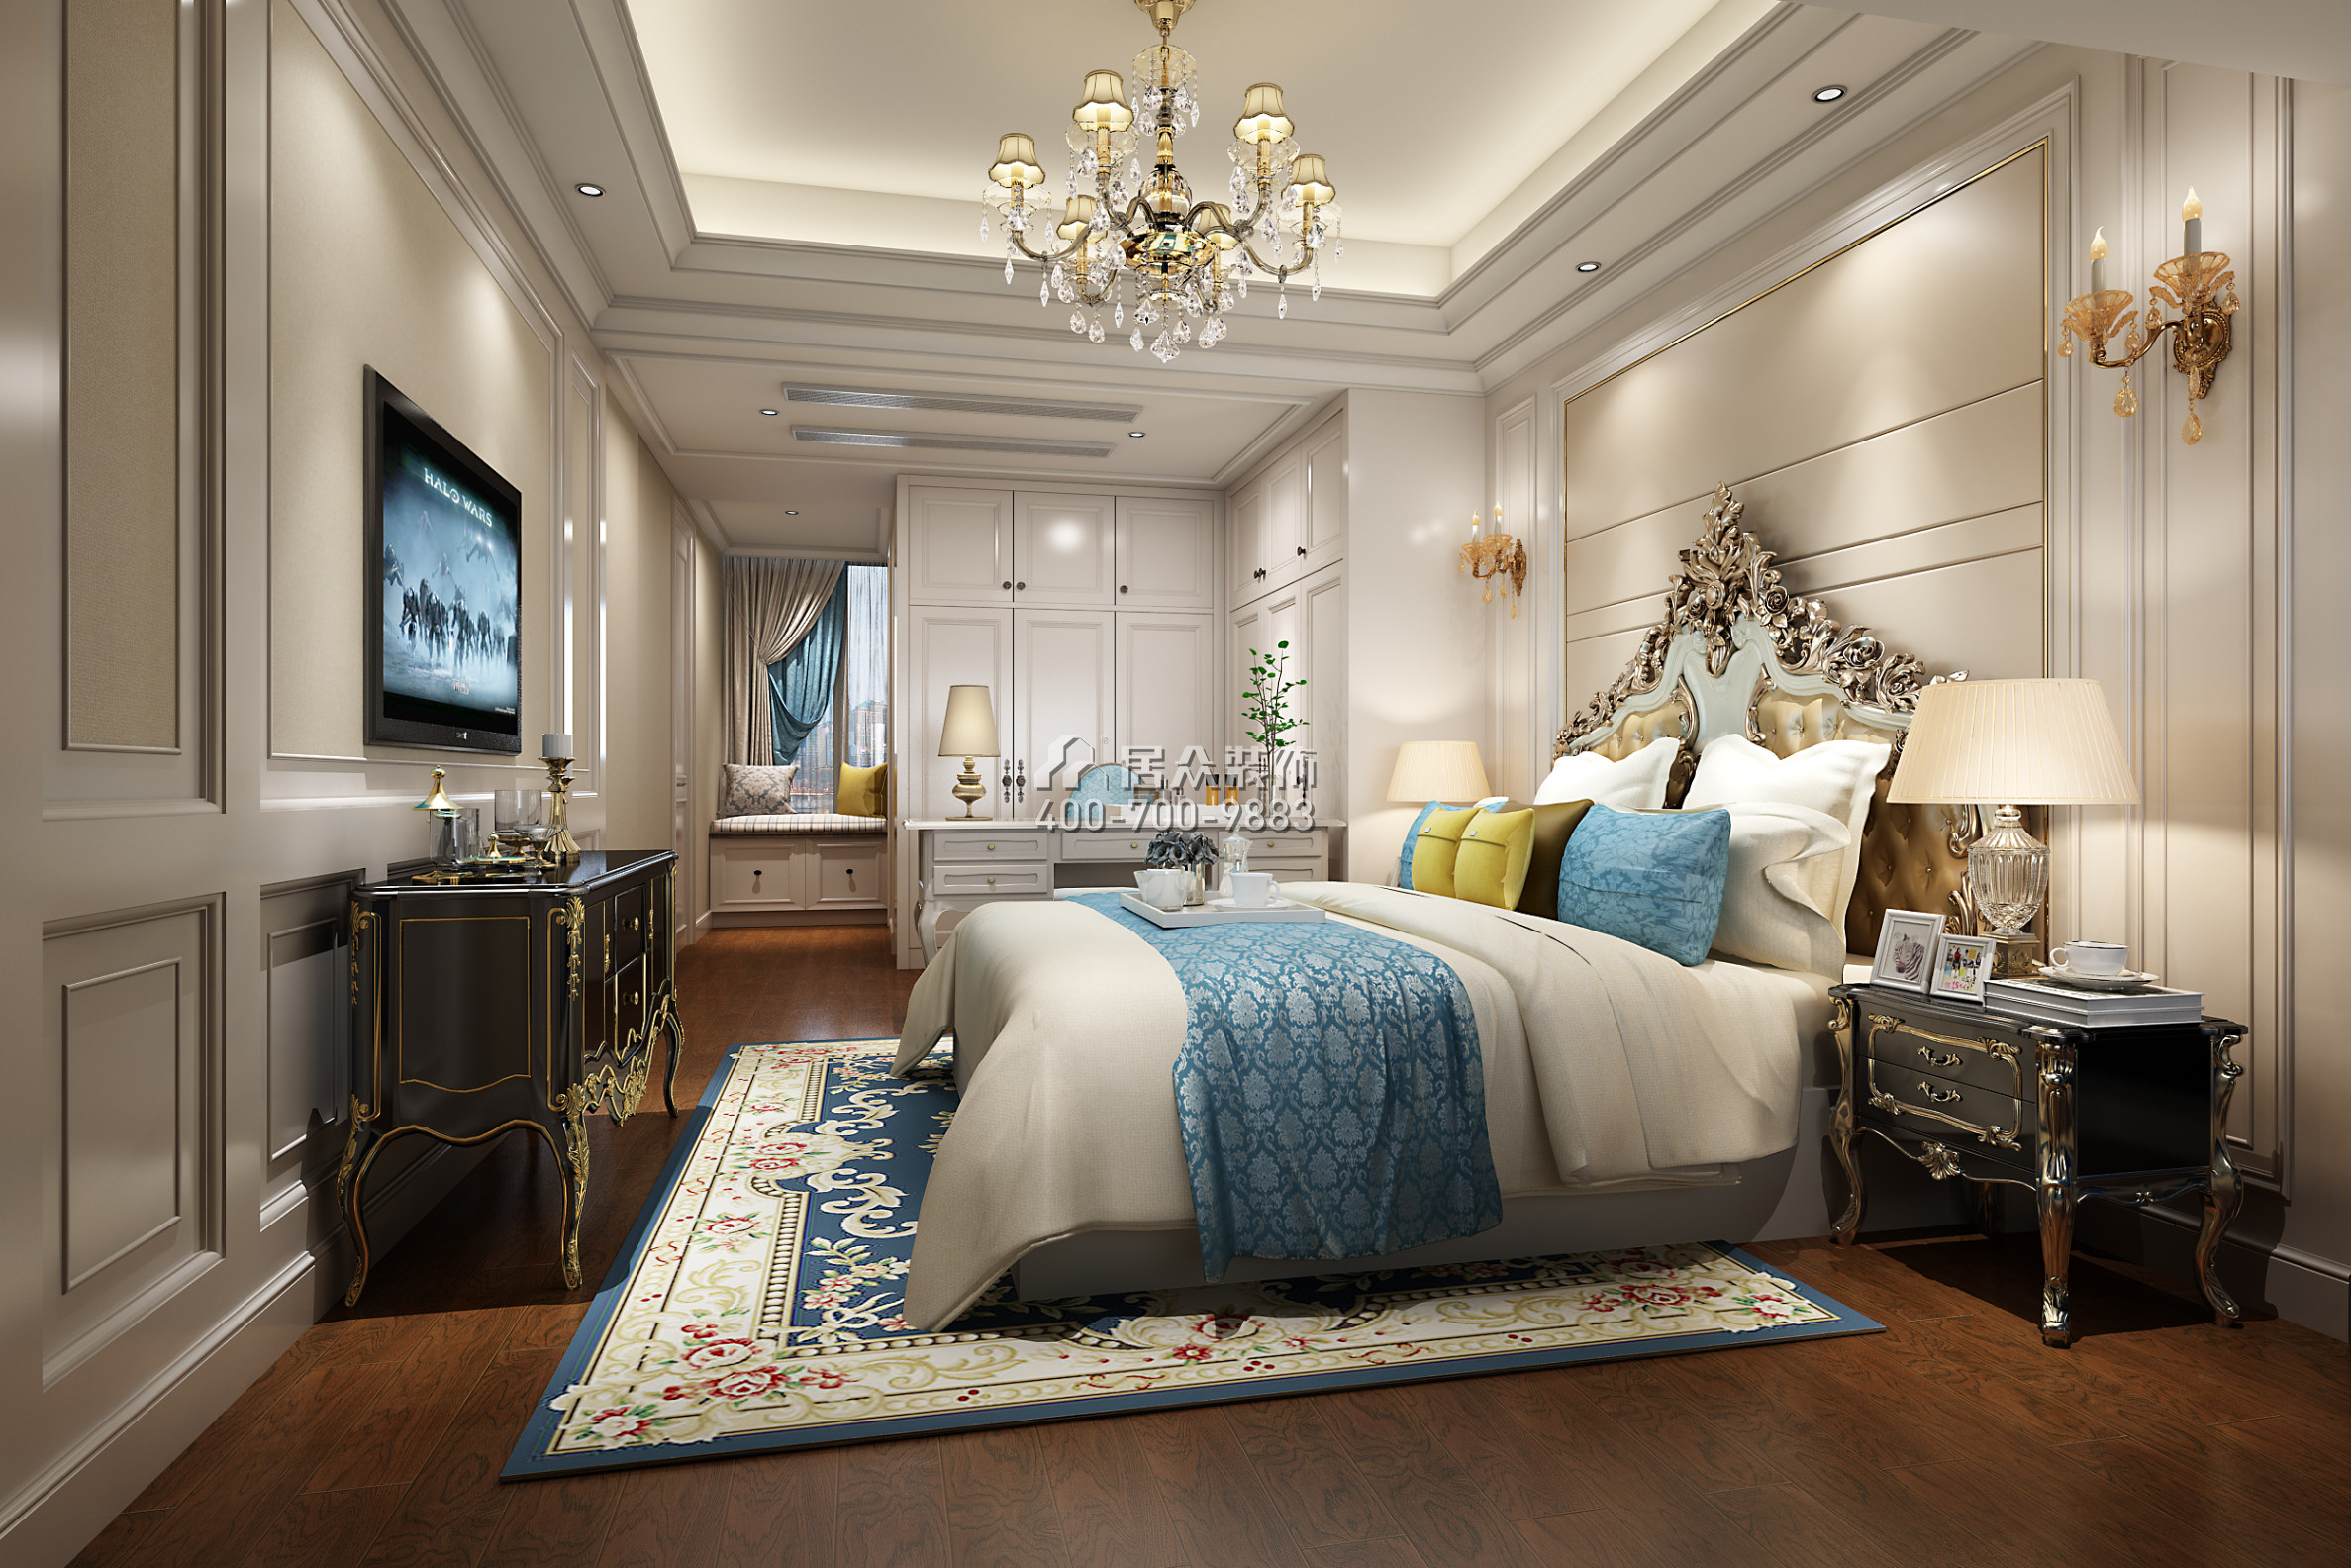 前海丹华园128平方米欧式风格平层户型卧室装修效果图